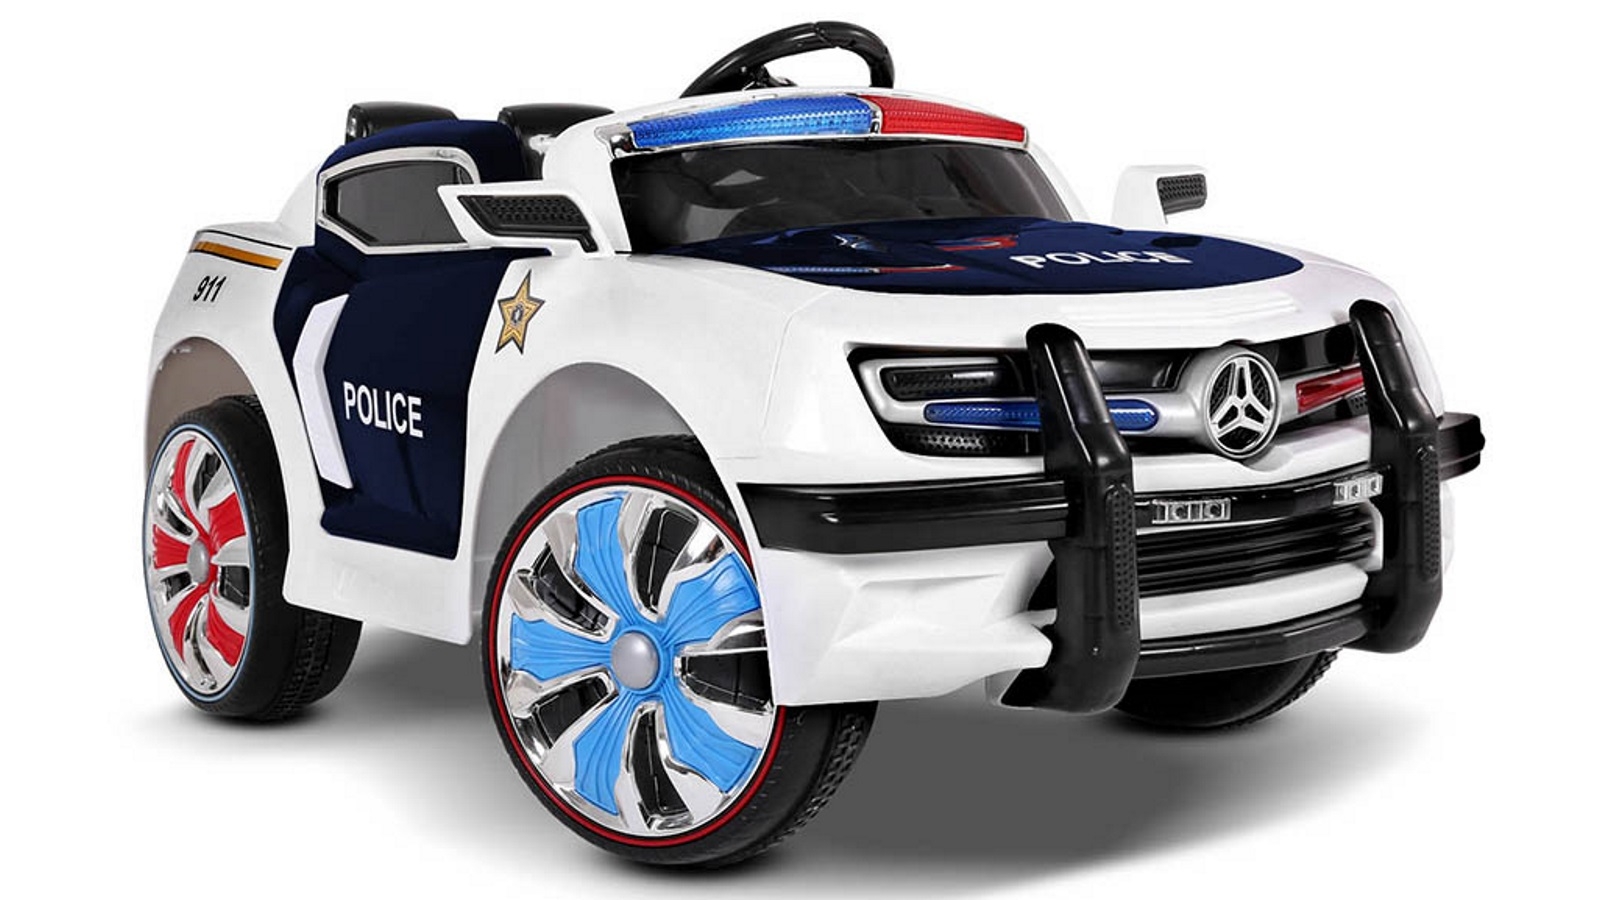 Rigo Kids Ride On Car Police, Police Car Bunk Beds